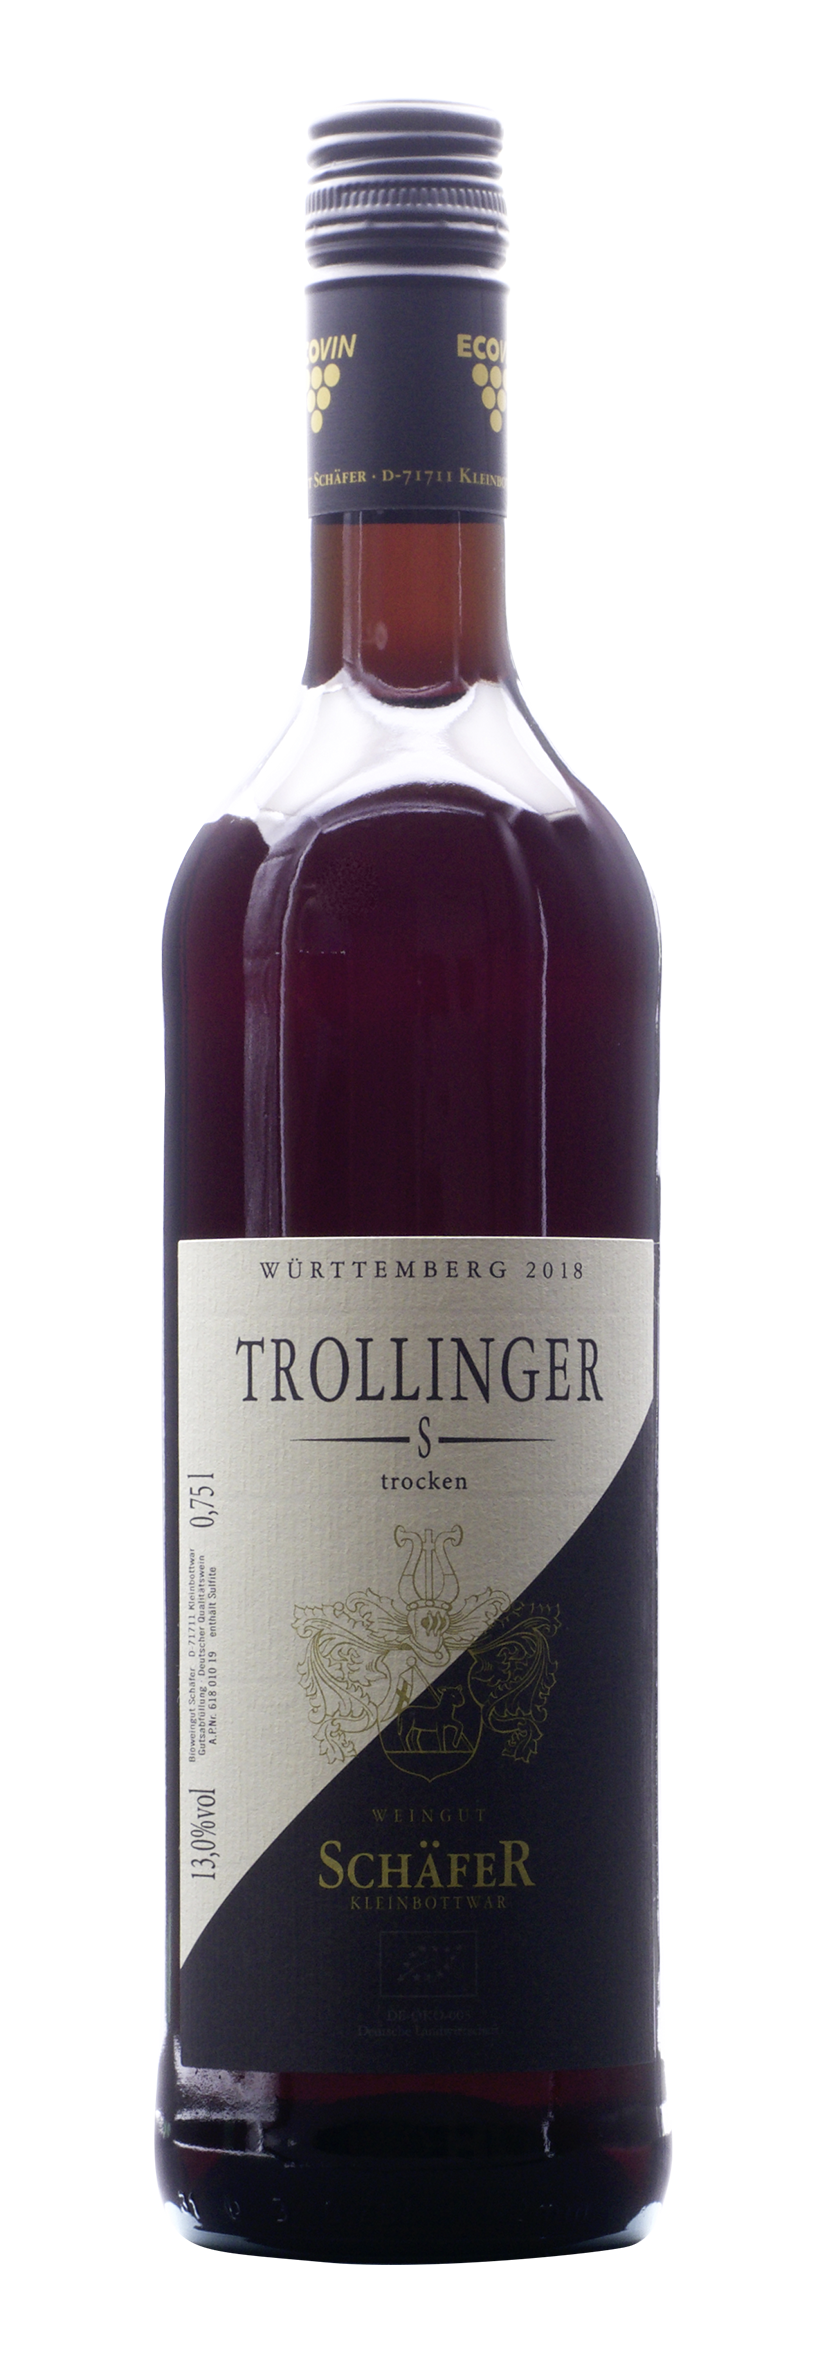 Trollinger -S- trocken 2018